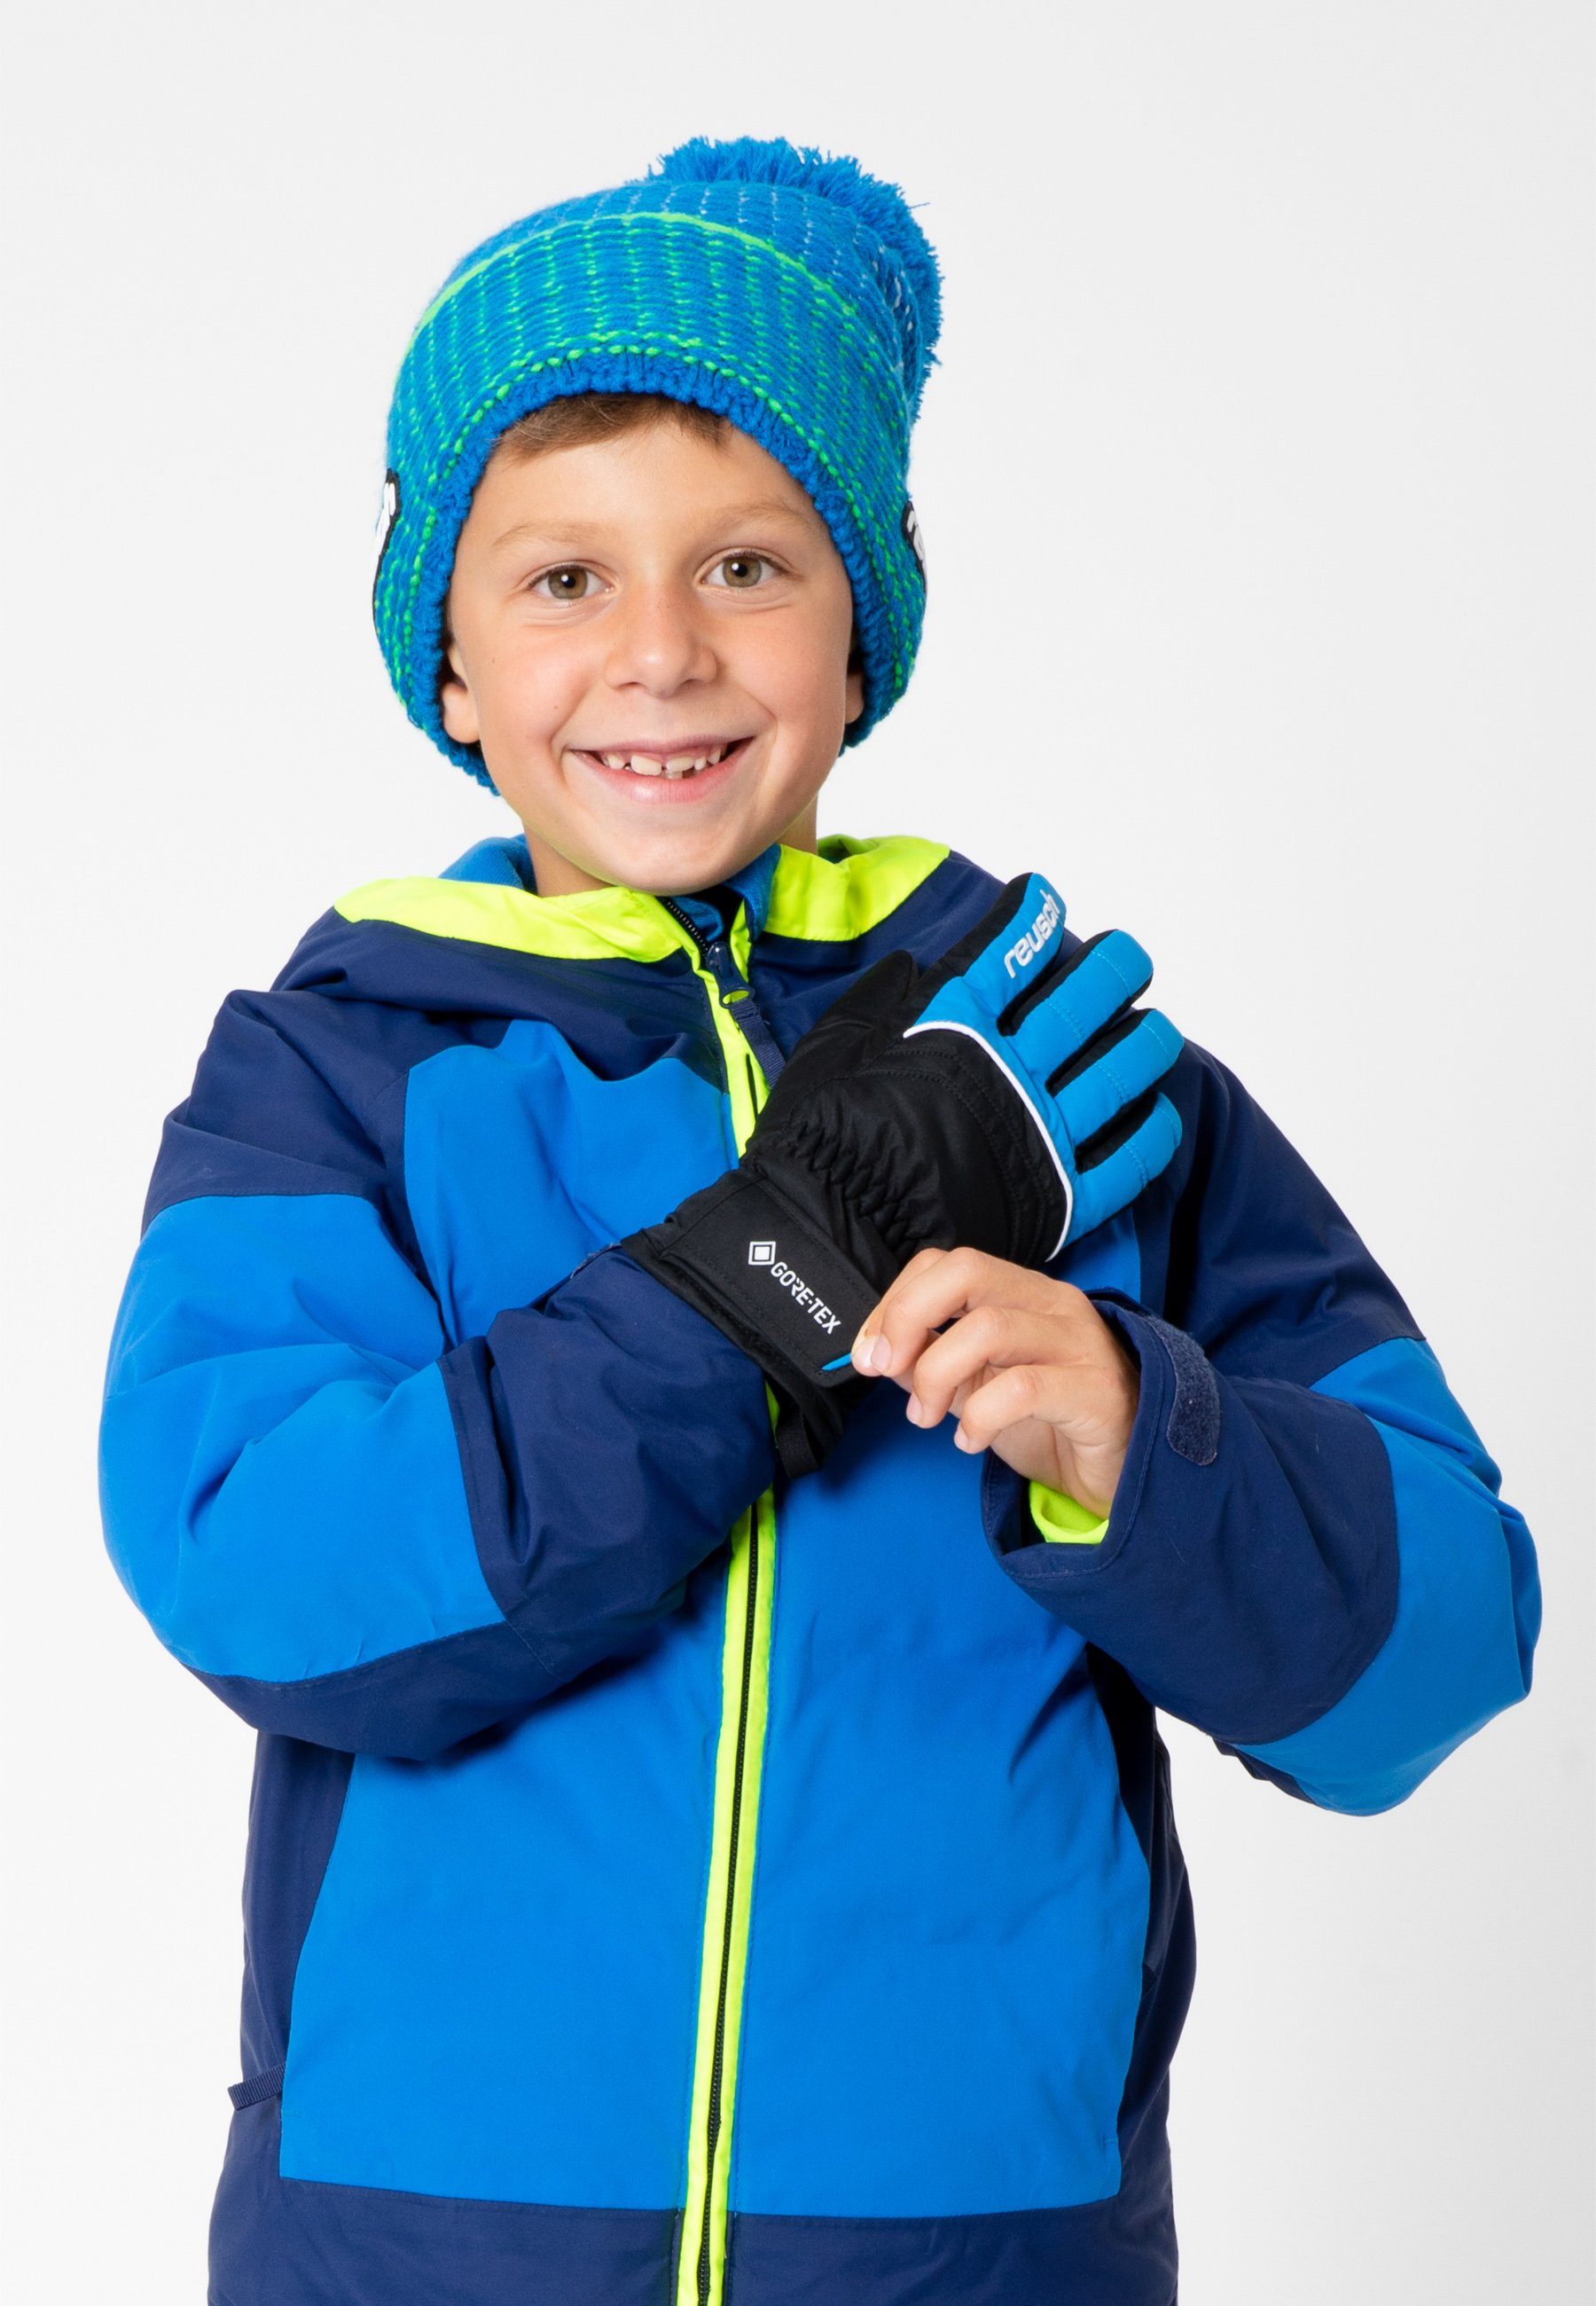 Skihandschuhe Funktionsmembran Teddy Reusch GORE-TEX mit blau-schwarz wasserdichter